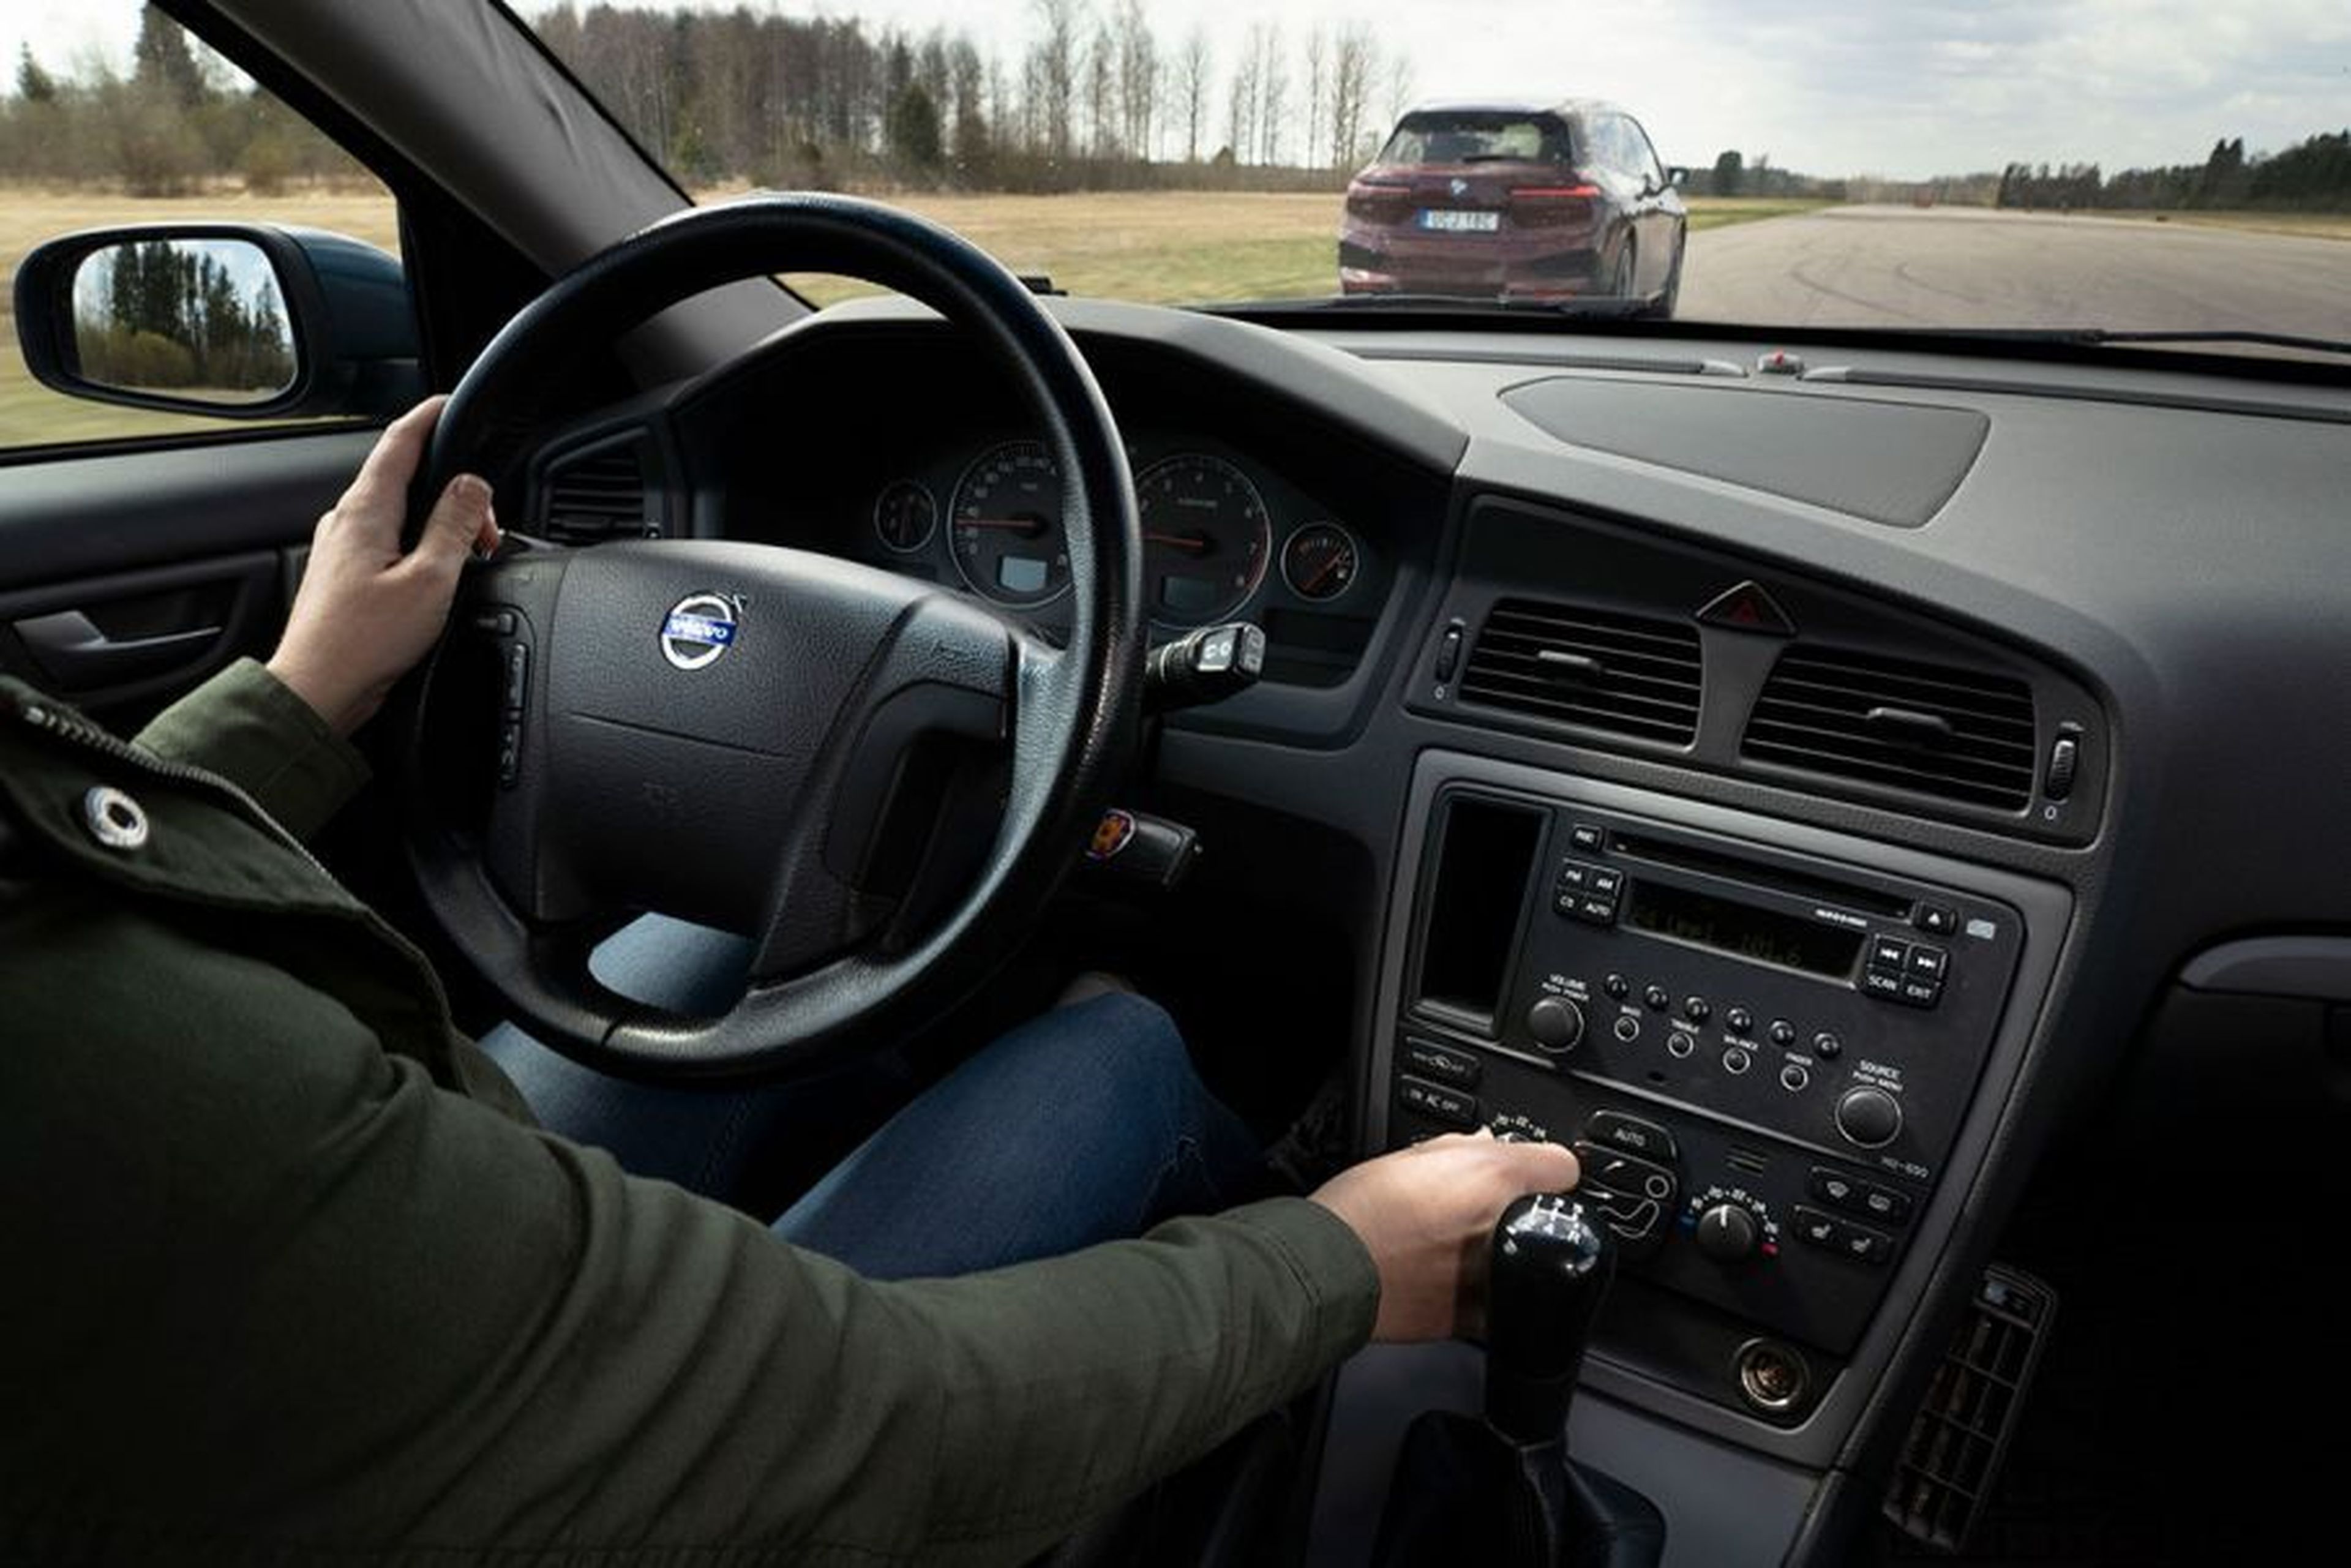 El Volvo V70 de 2005 muestra que los controles físicos son más fáciles de usar que las pantallas táctiles.